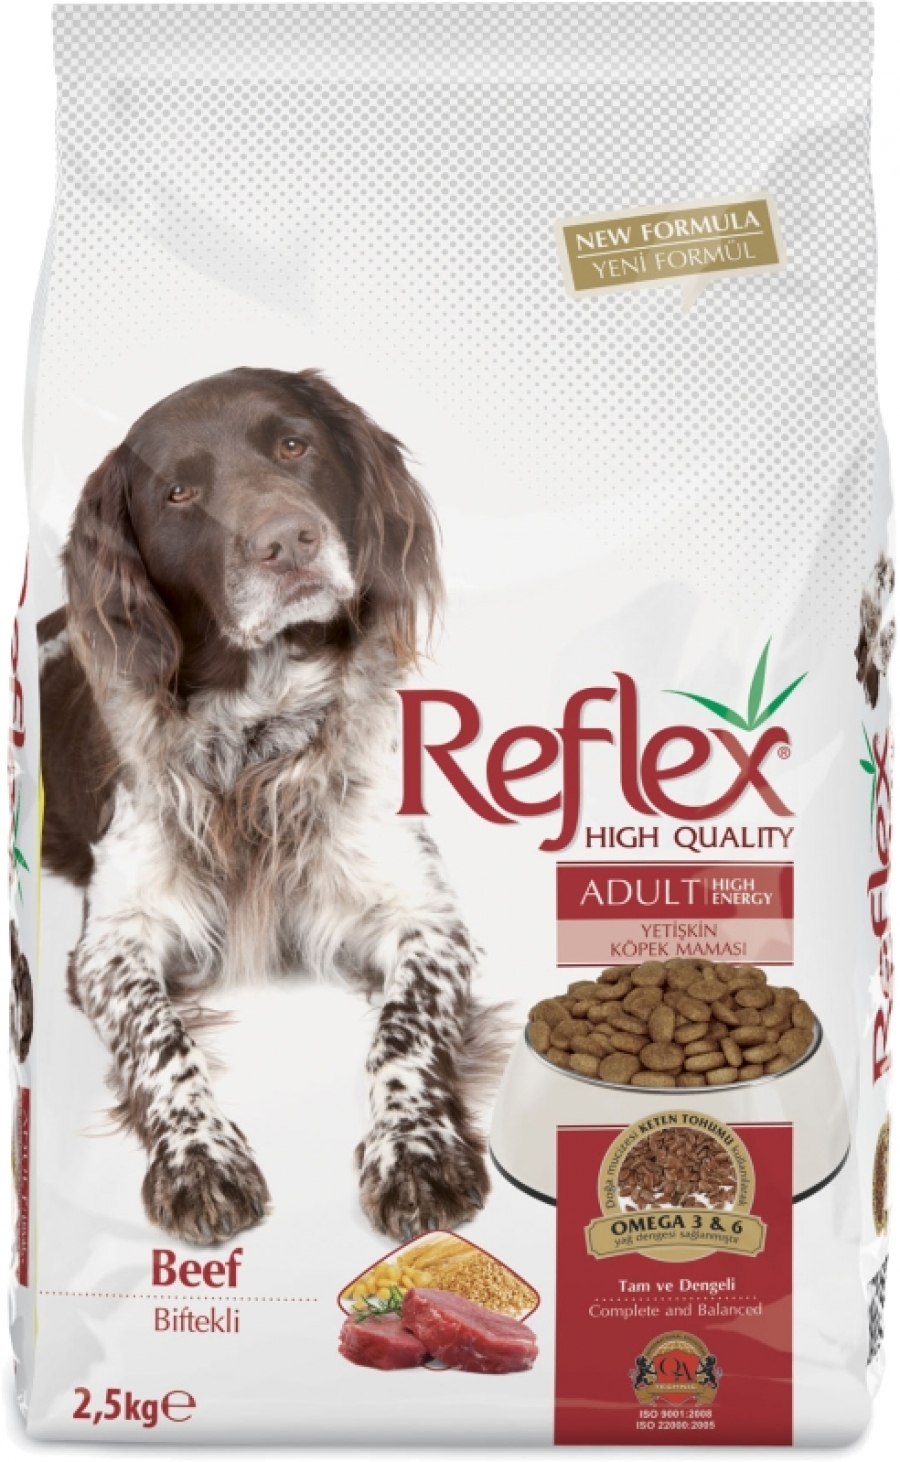 REFLEX ADULT DOG FOOD 2,5 KG'LIK PAKET